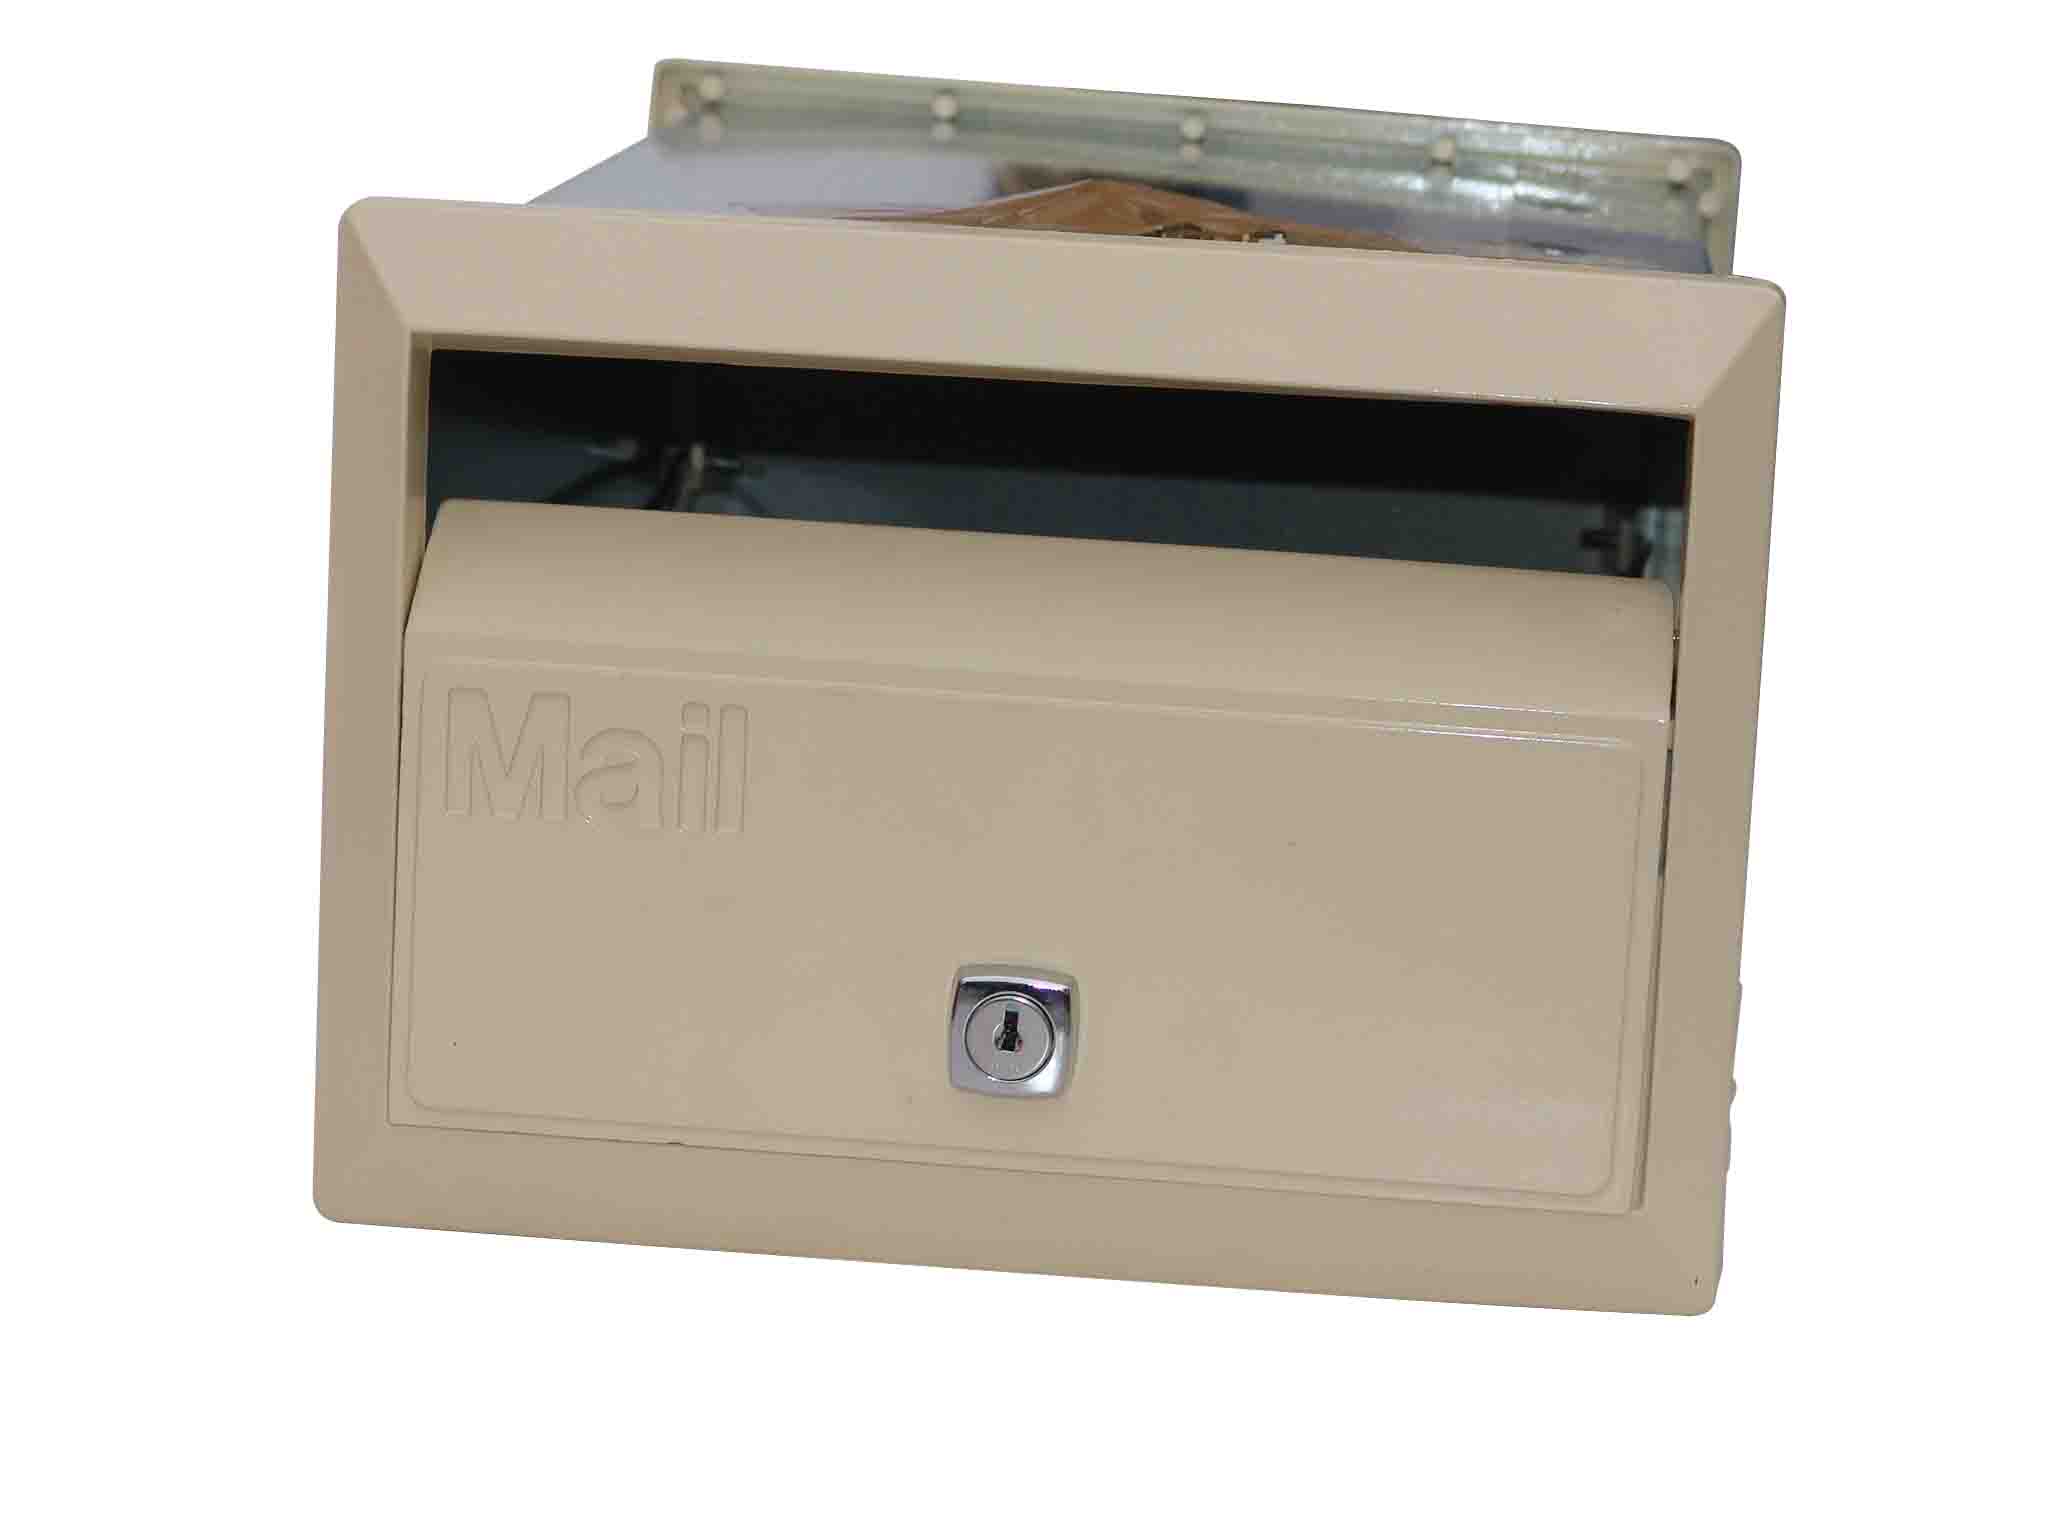  Mailbox (Почтовый ящик)